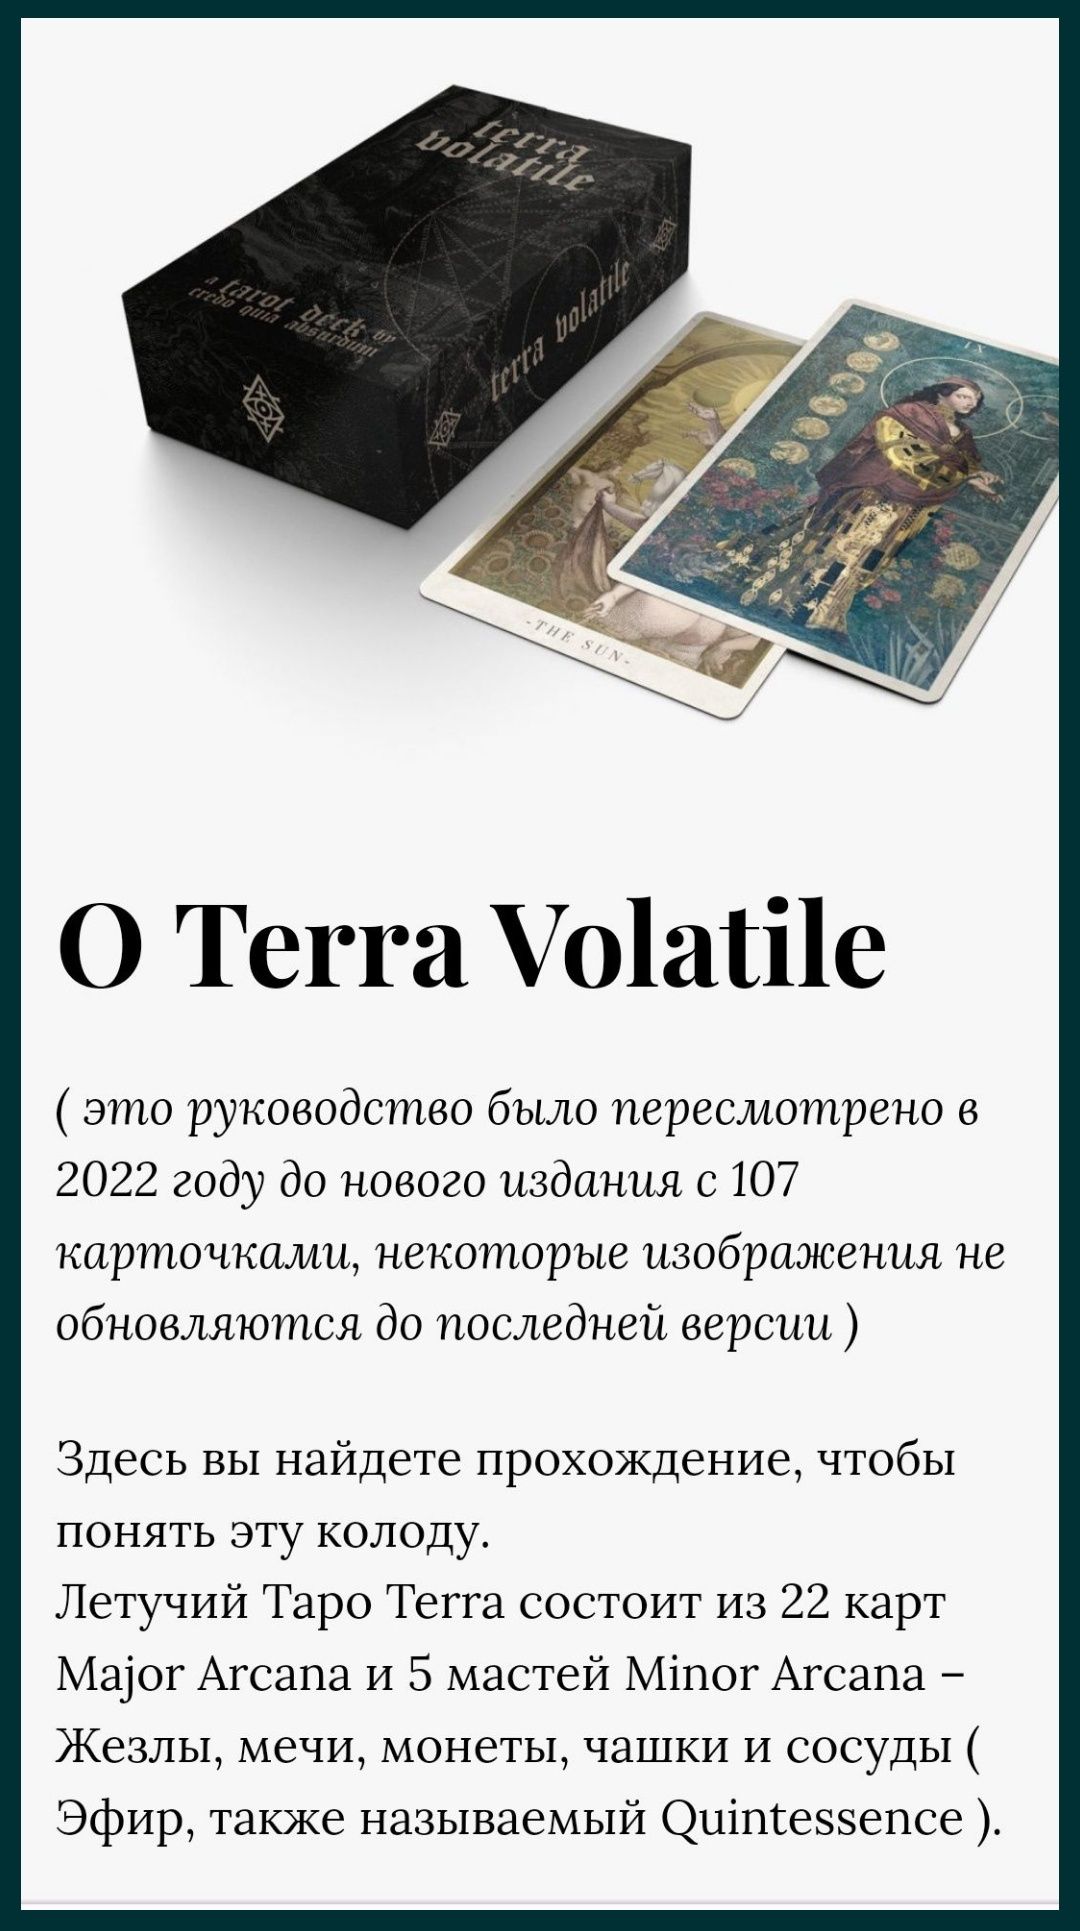 Таро "Terra Volatile", 5 мастей, золотой срез